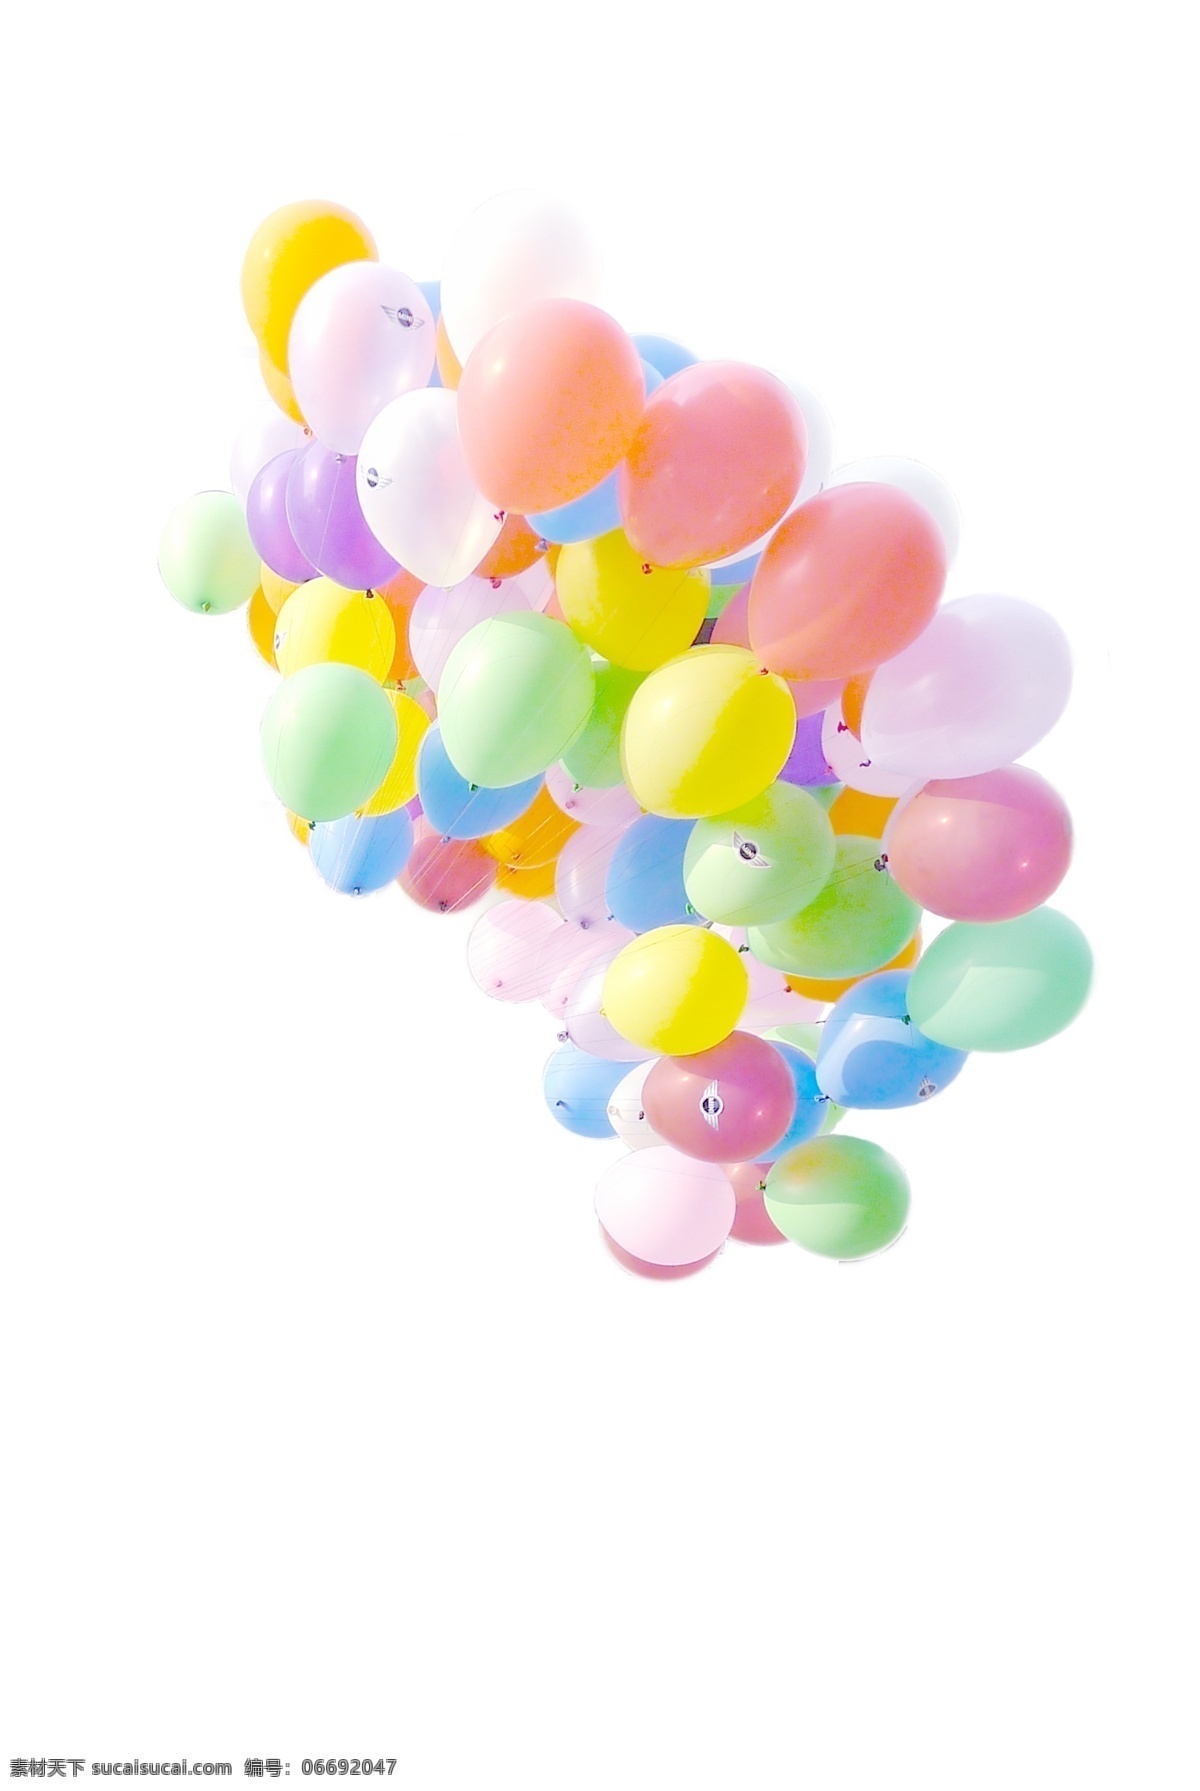 情迷气球 红色气球 氢气球 七彩 多彩 白色气球 氢气球素材 五彩 球 渐变气球 天空气球 紫色气球 绿色气球球 蓝色气球 彩色气球 扁平气球 气球海报 气球背景 旅行 旅游 气球展架 展架 云朵展架 色彩背景 天空背景 气球图集 生活百科 分层